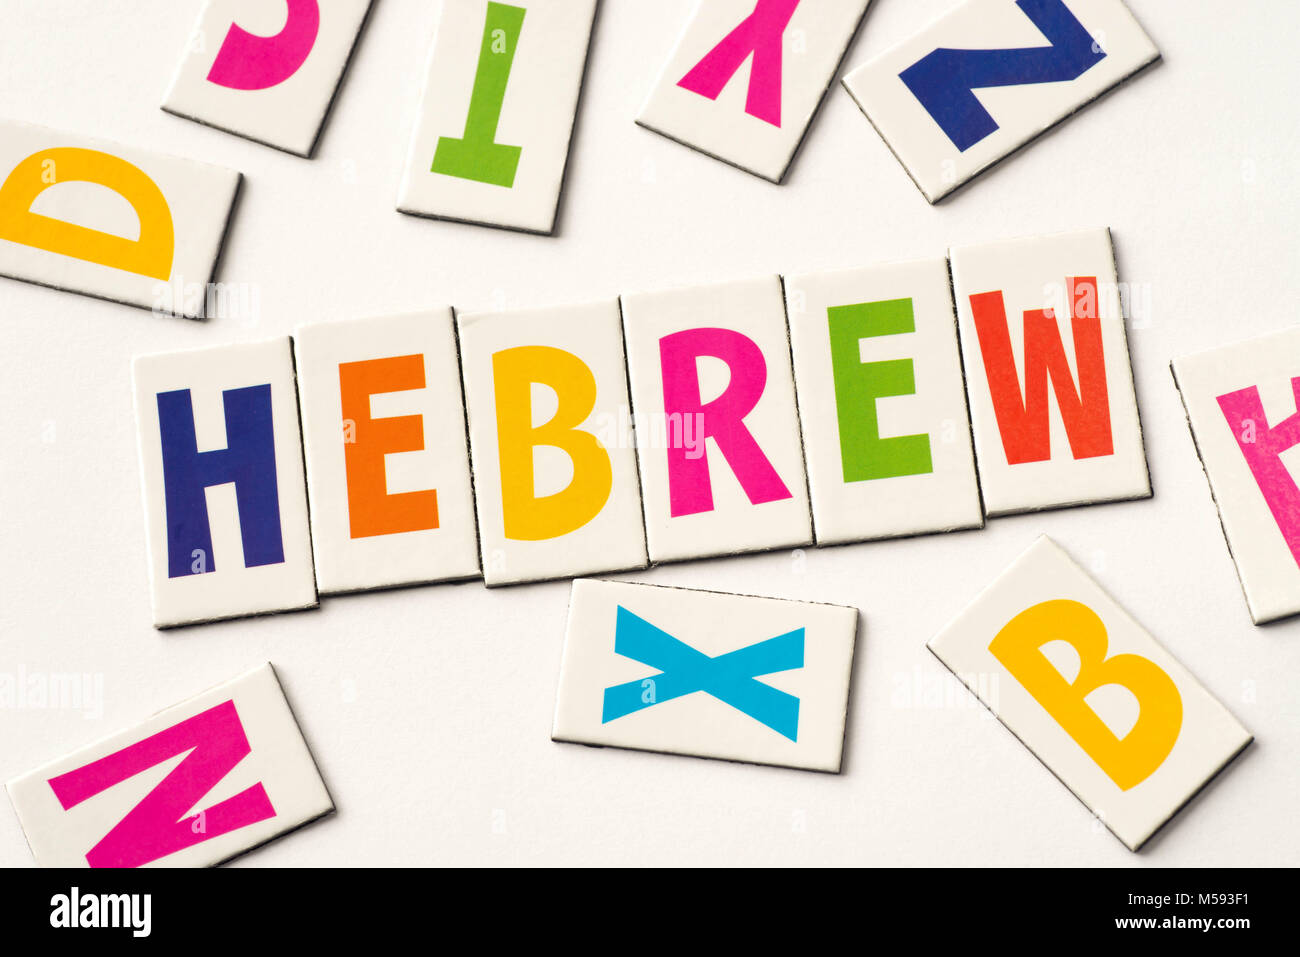 Wort Hebräisch Aus bunte Buchstaben auf weißem Hintergrund Stockfoto